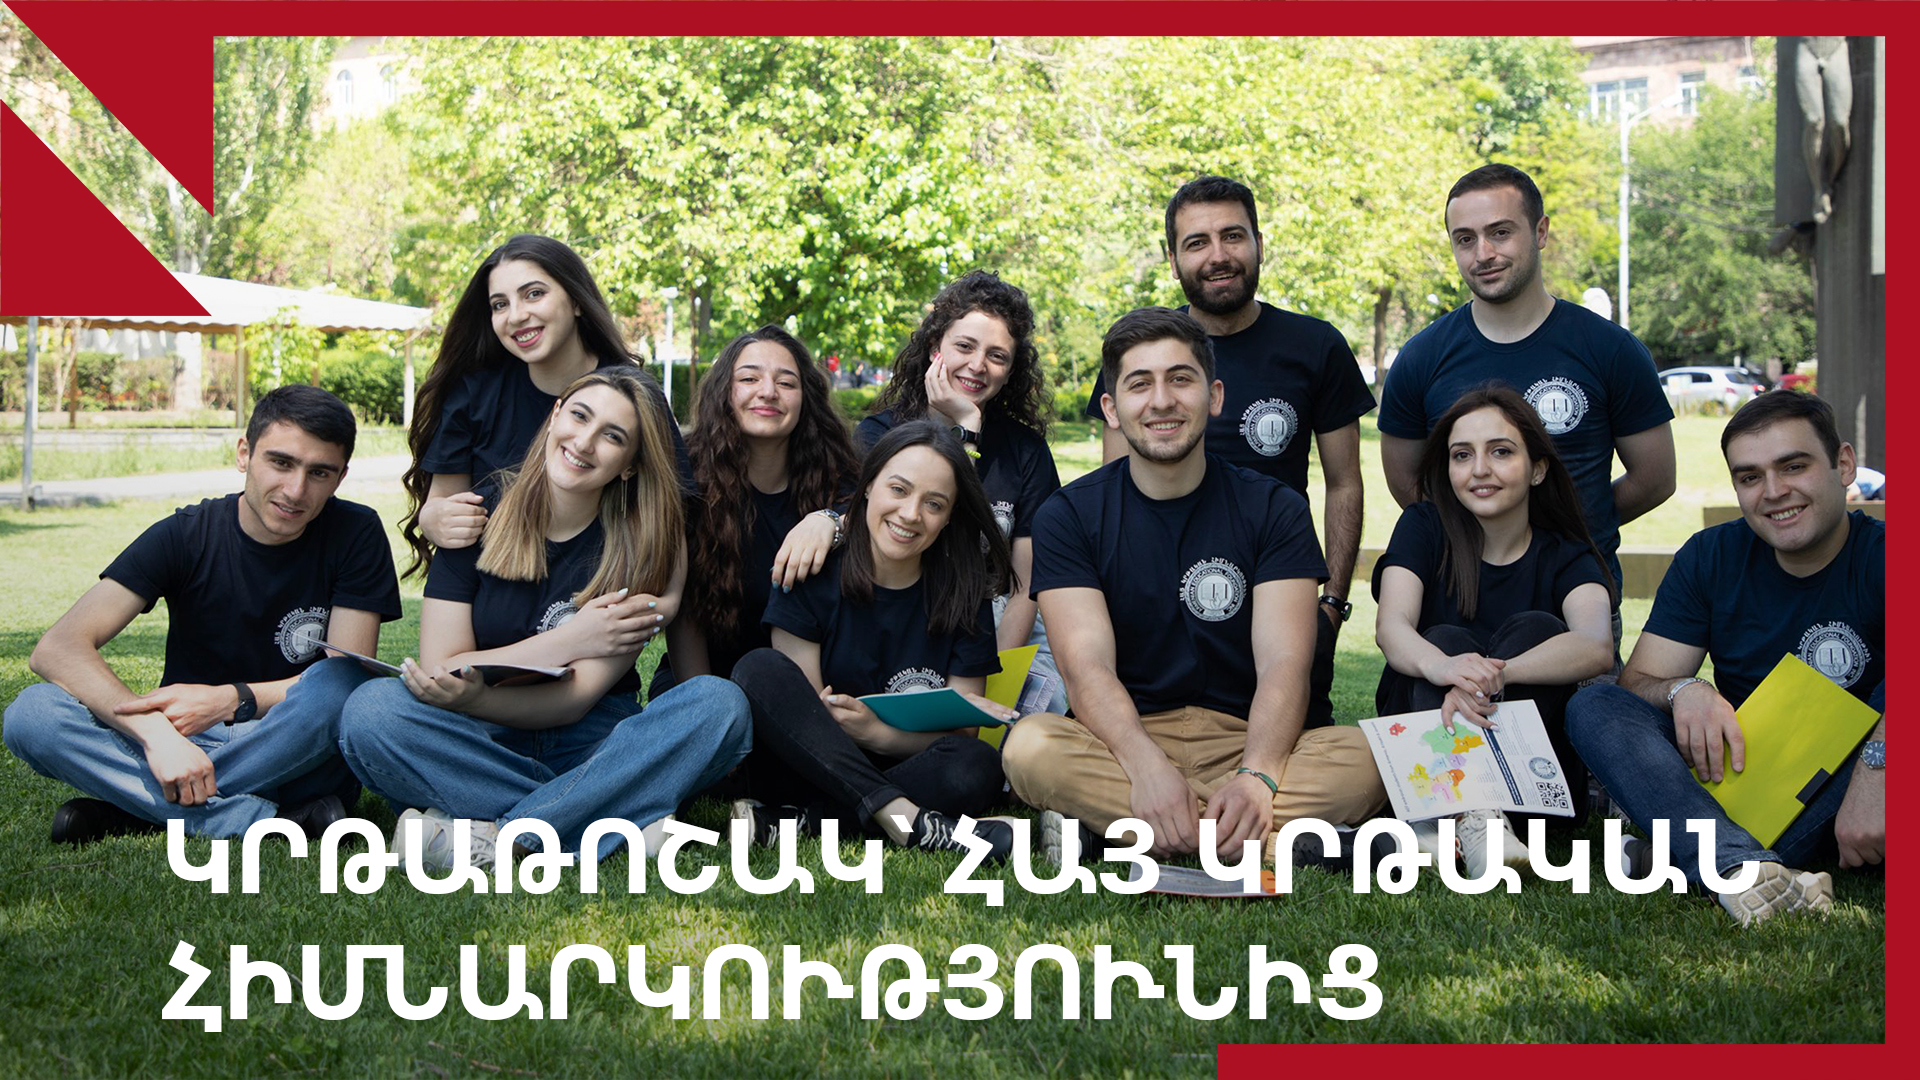 Հայ կրթական հիմնարկությունը աջակցում է Հայաստանի, Արցախի և Ջավախքի ուսանողներին